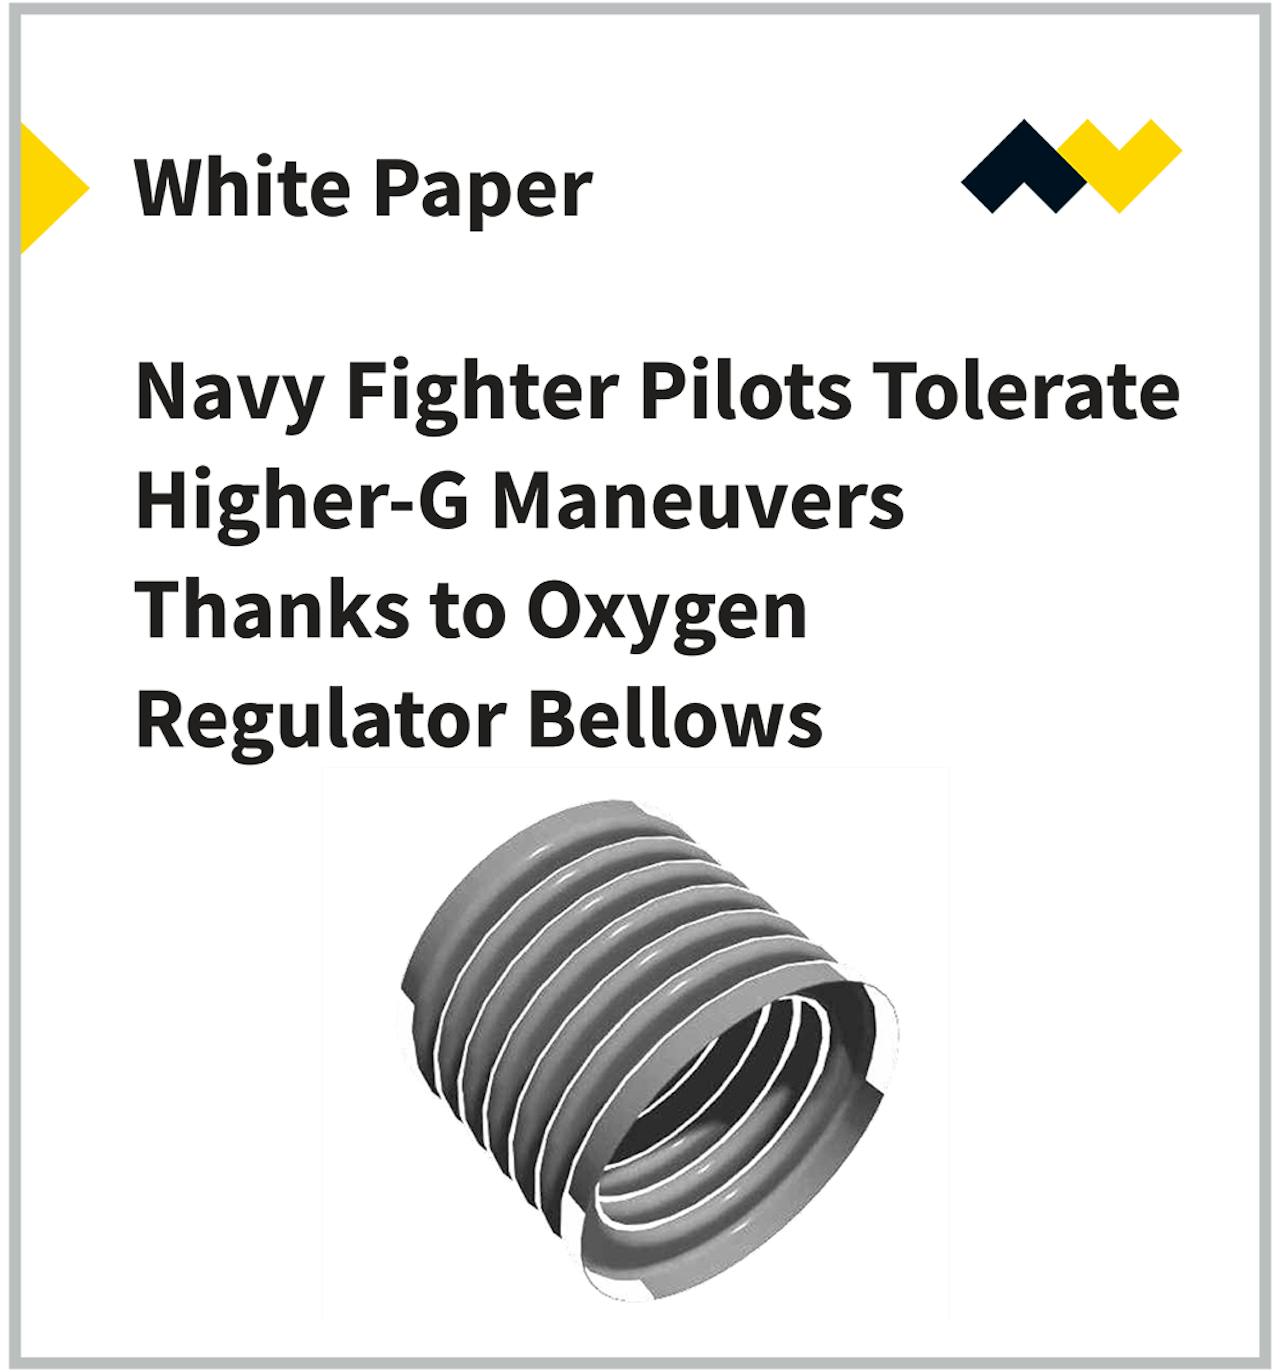 海军战斗机飞行员可以忍受更高的重力操纵，这要归功于氧气调节器波纹管